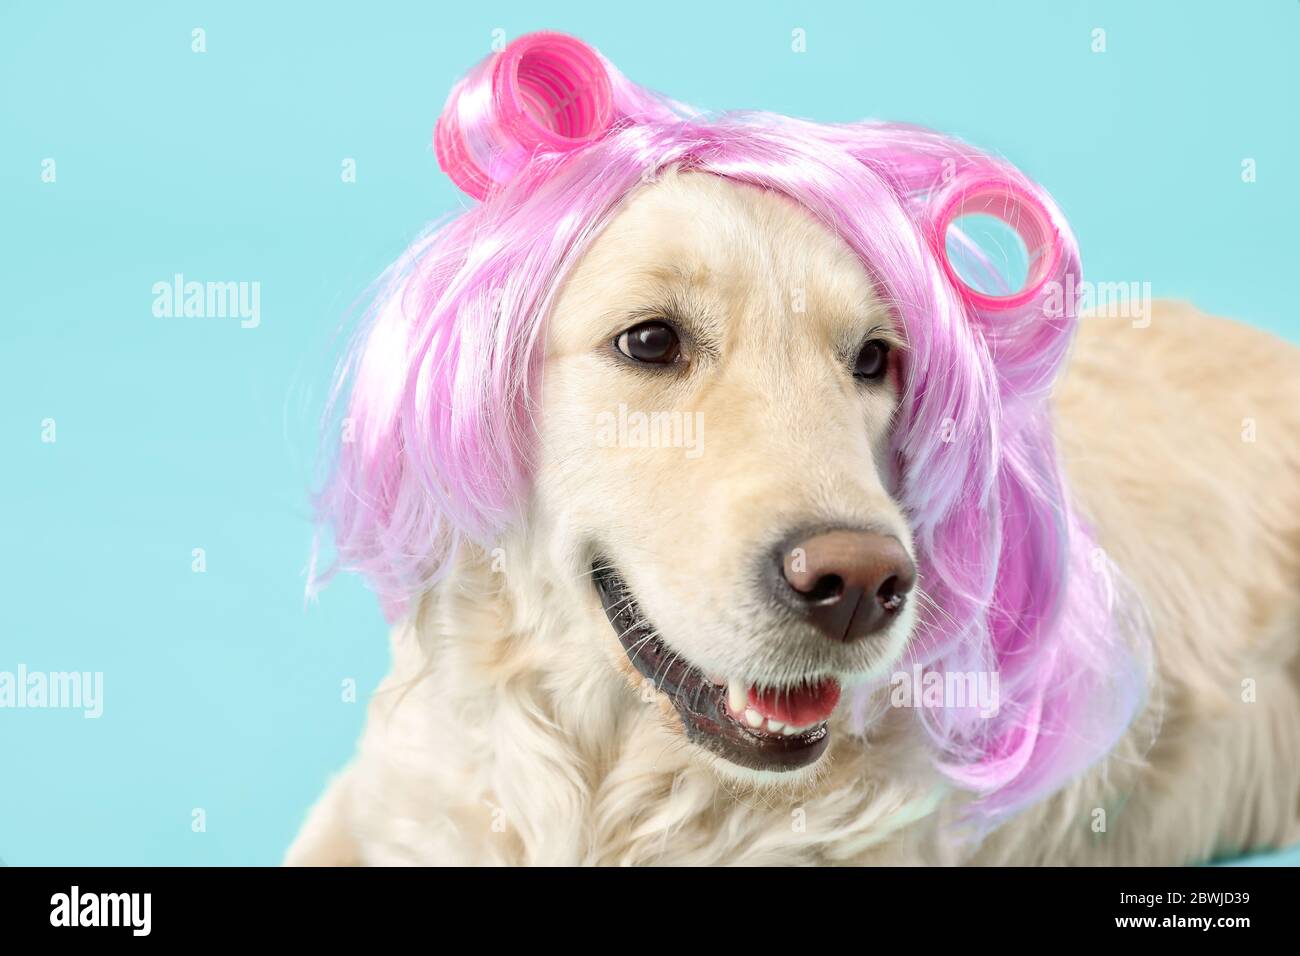 Lustige Hund in Perücke und Lockenwickler auf farbigen Hintergrund  Stockfotografie - Alamy